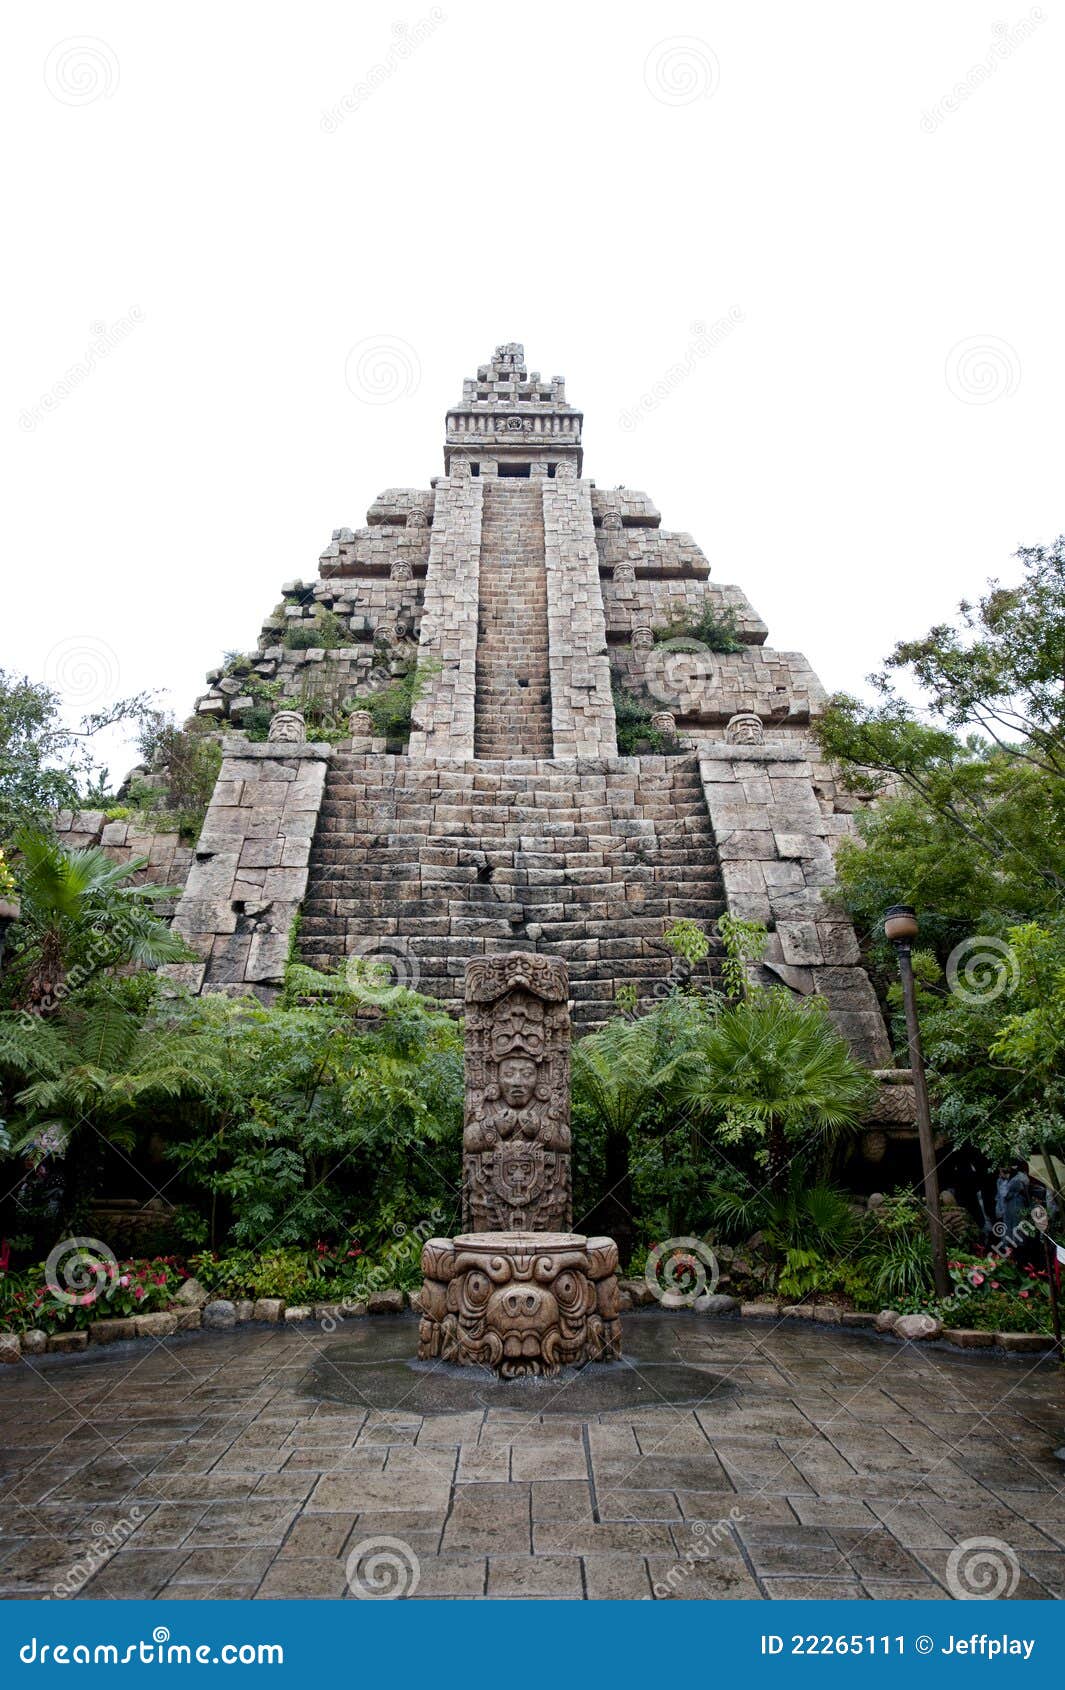 maya civilization building